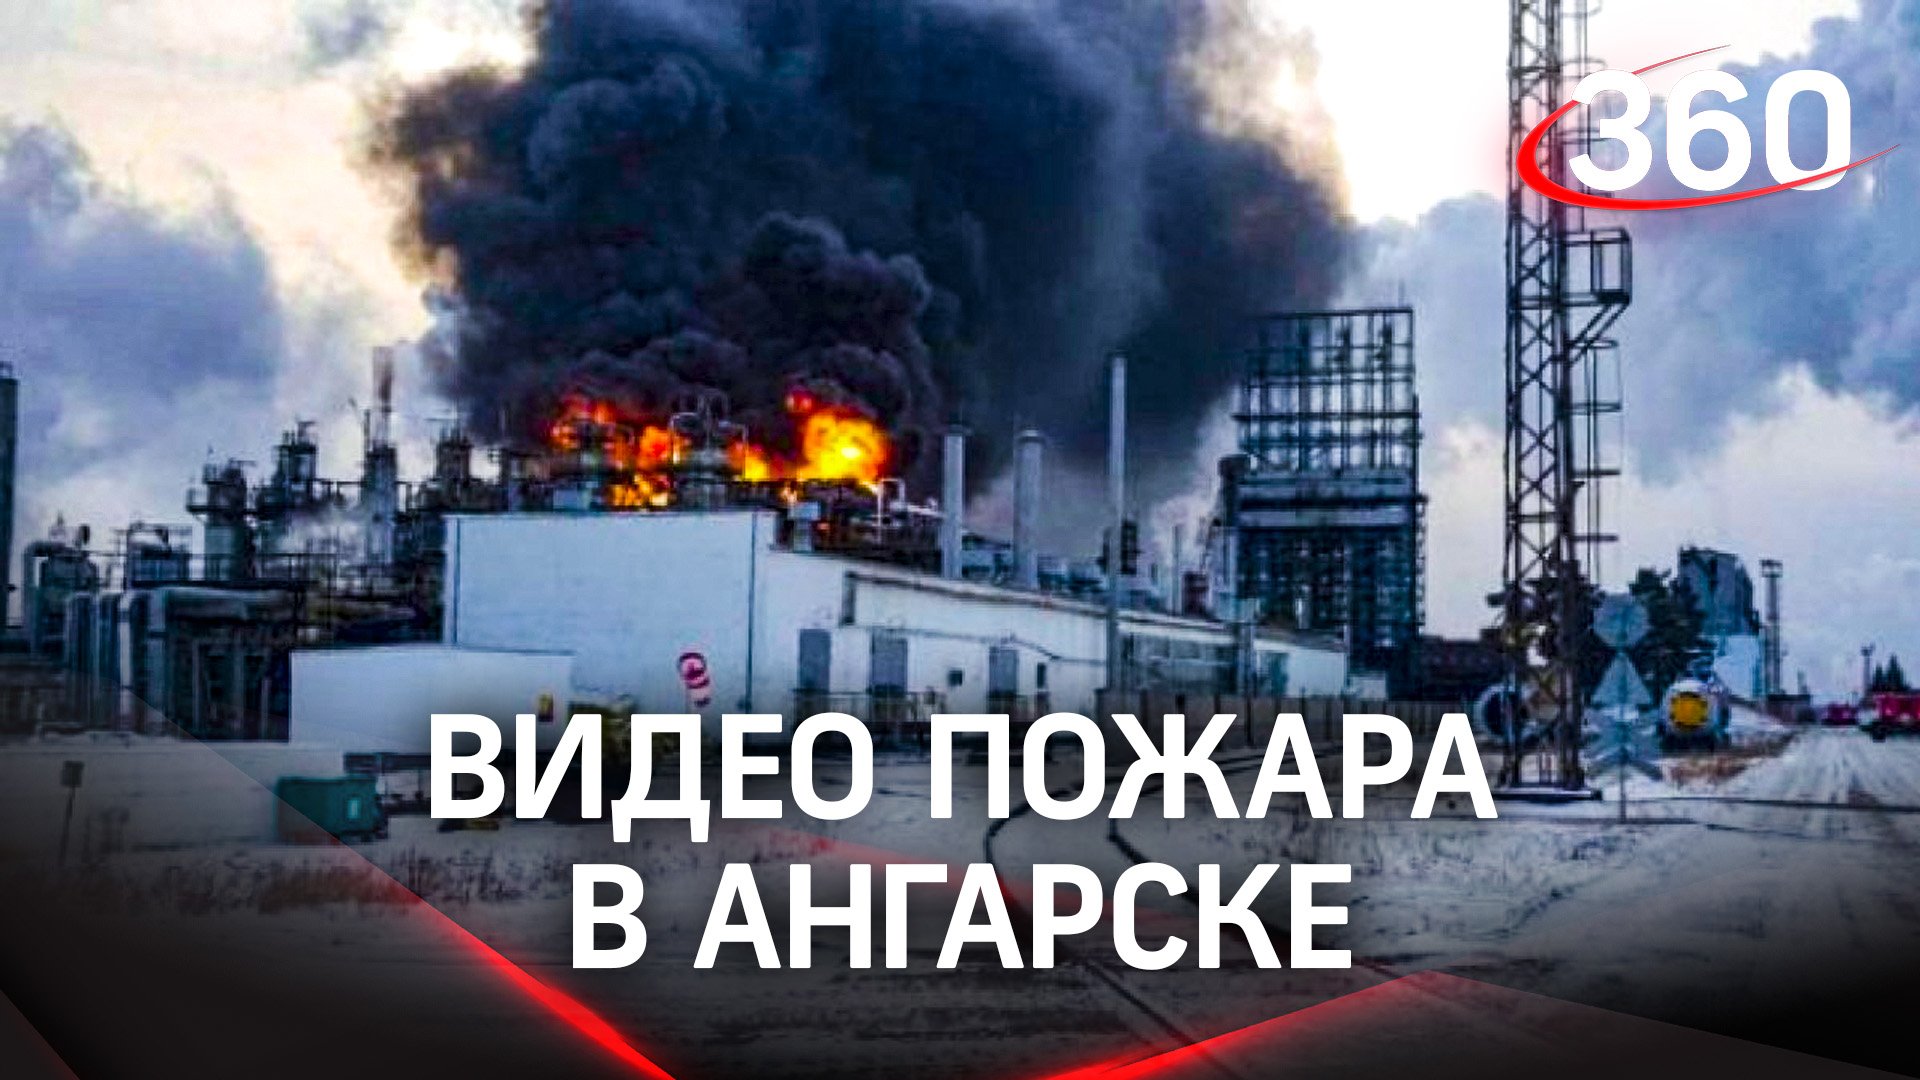 В Ангарске загорелся нефтезавод. Спасатели охлаждали водой резервуары, чтобы не взорвались. Видео